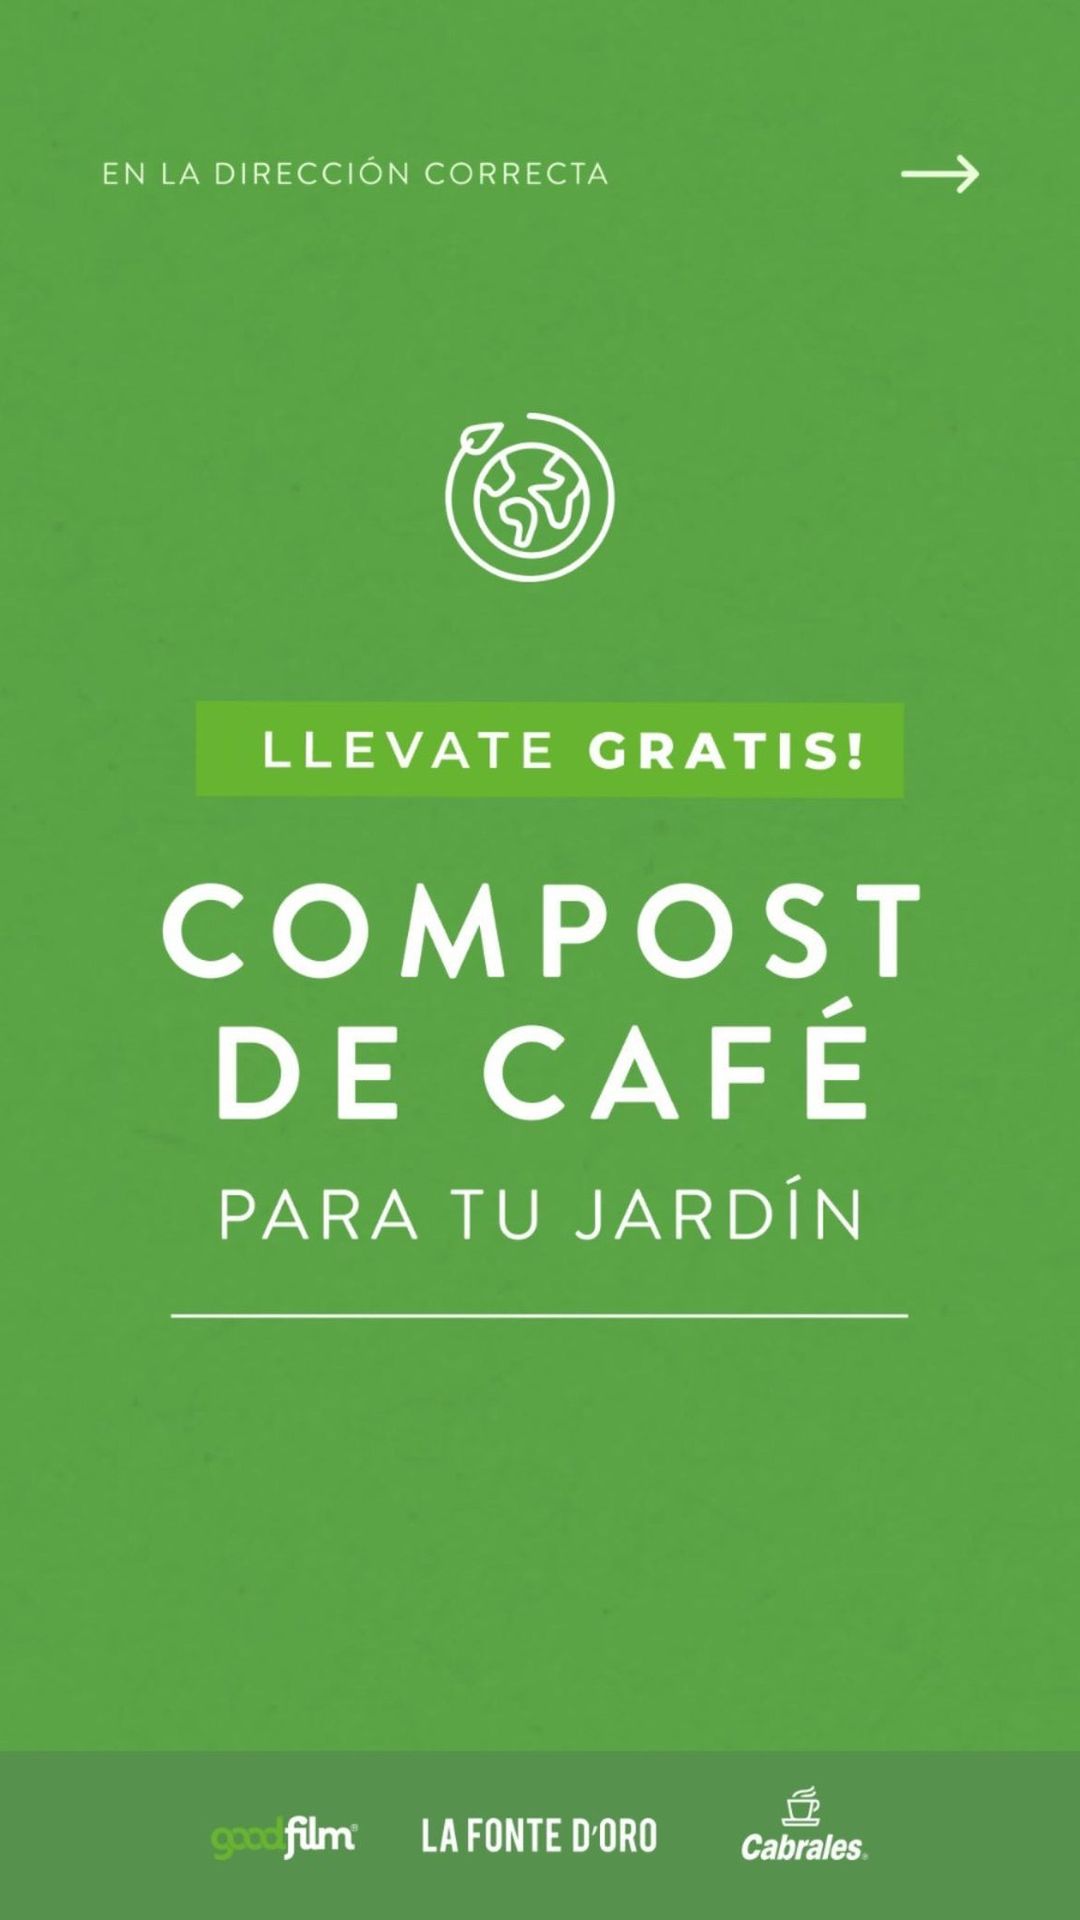 Compost de Cafe